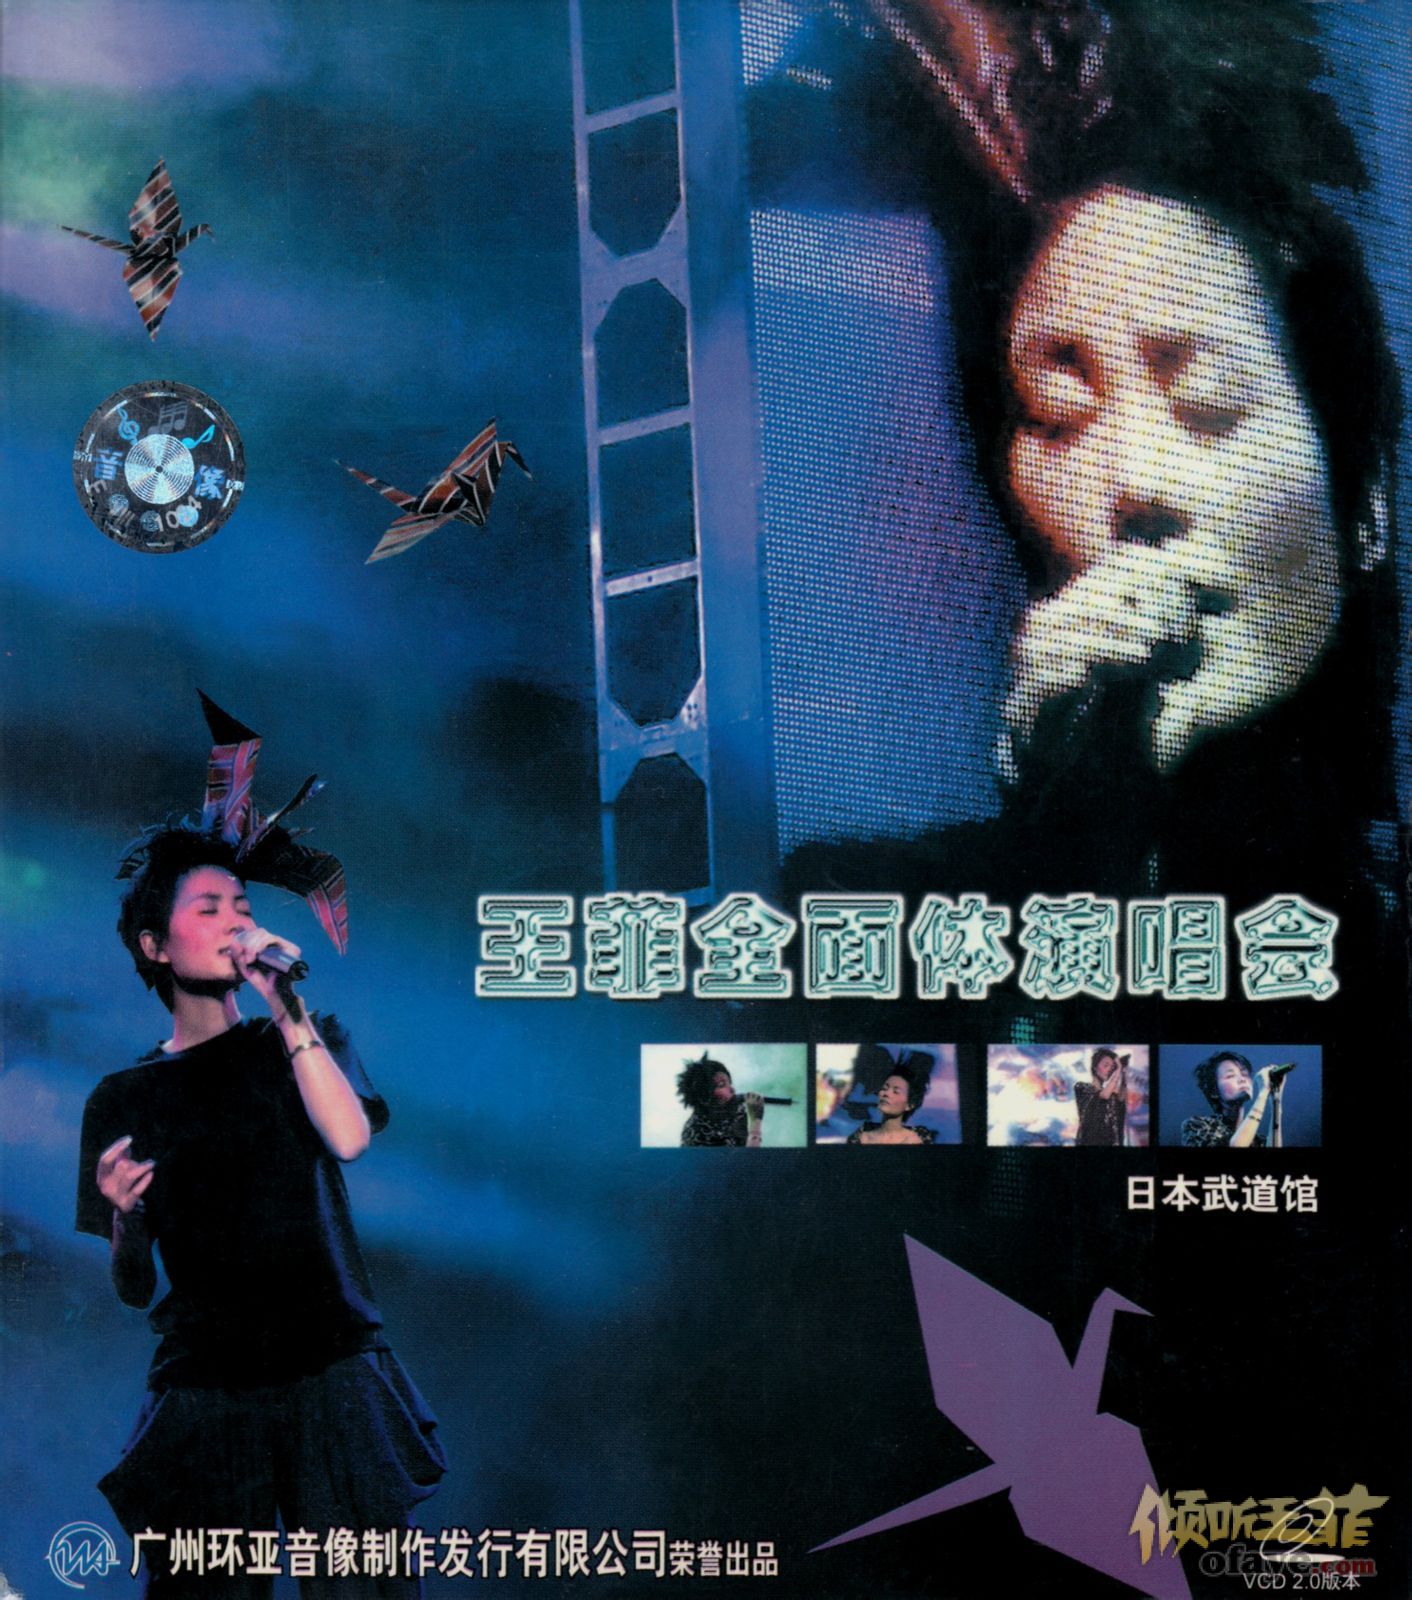 王菲最精彩的演唱会 - Live CD - 倾听王菲::OFAYE.com